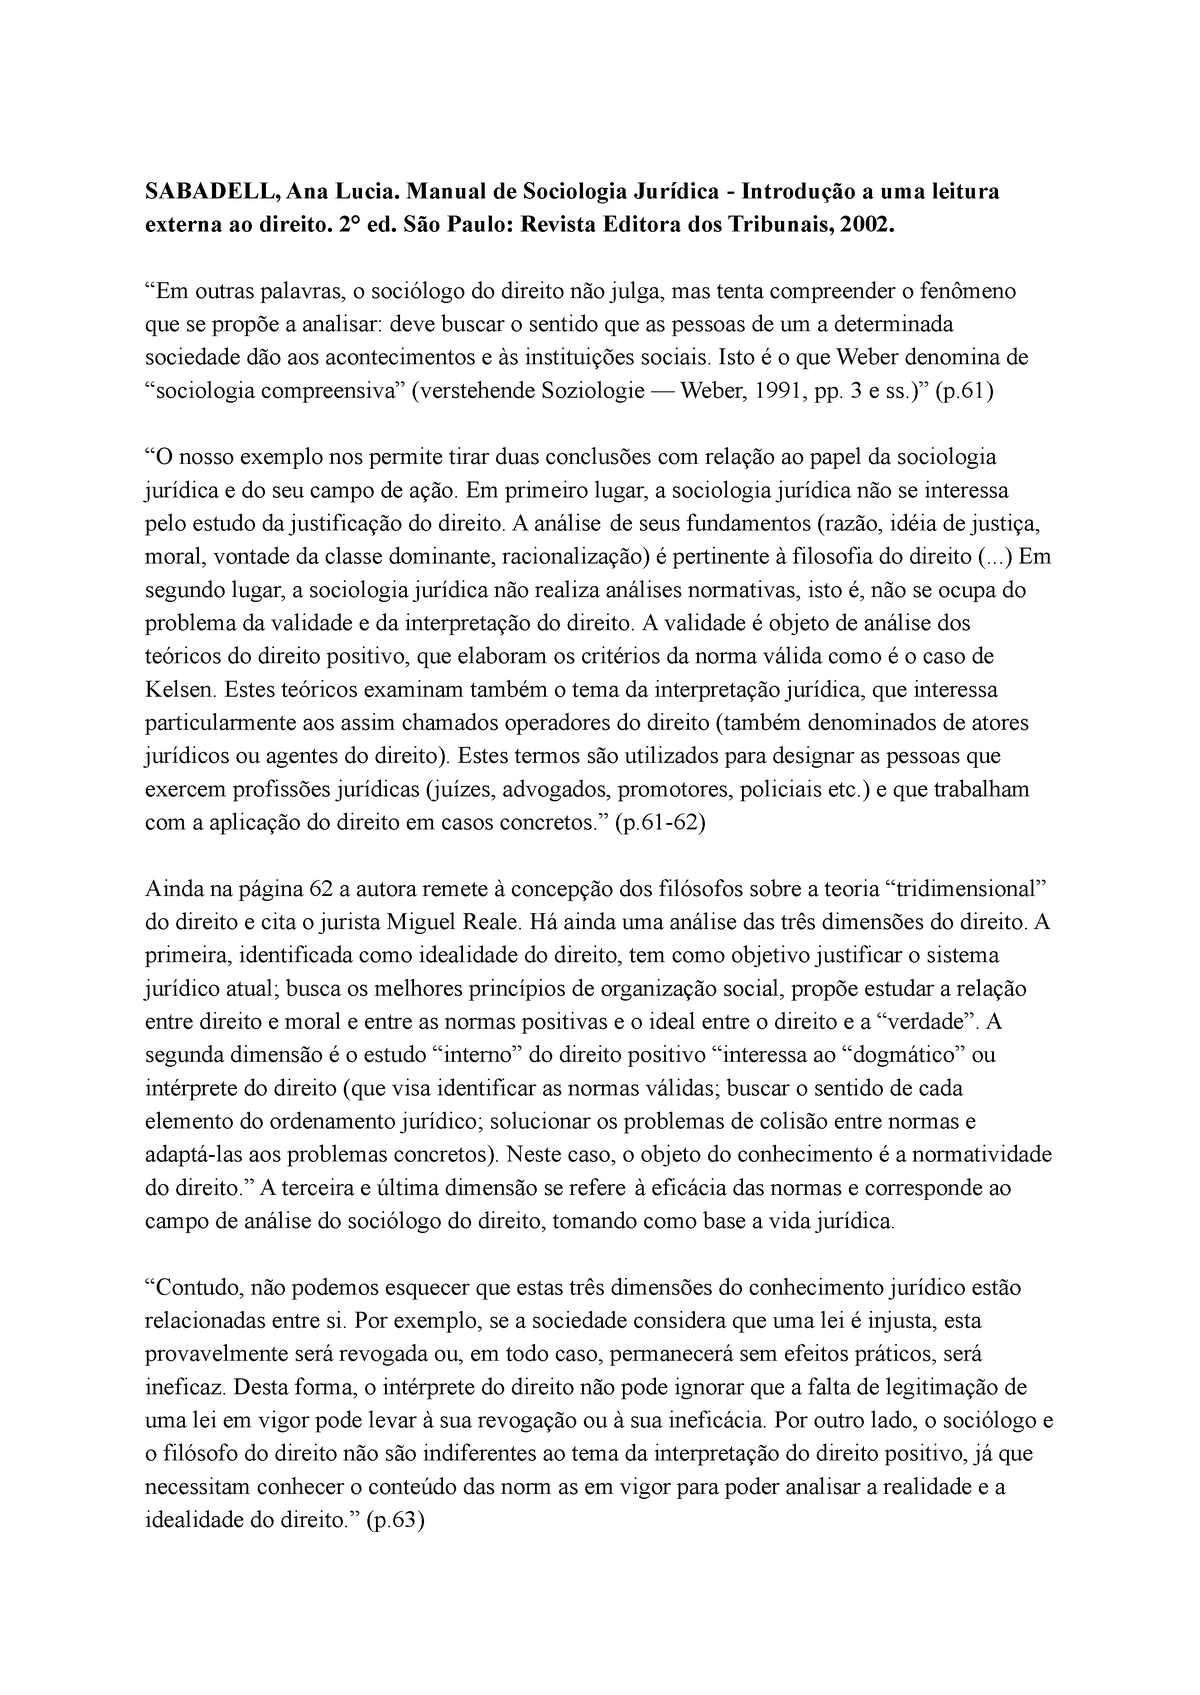 Fichamento Da Obra Manual De Sociologia Jurídica Sabadell Ana Lucia Manual De Sociologia 4806